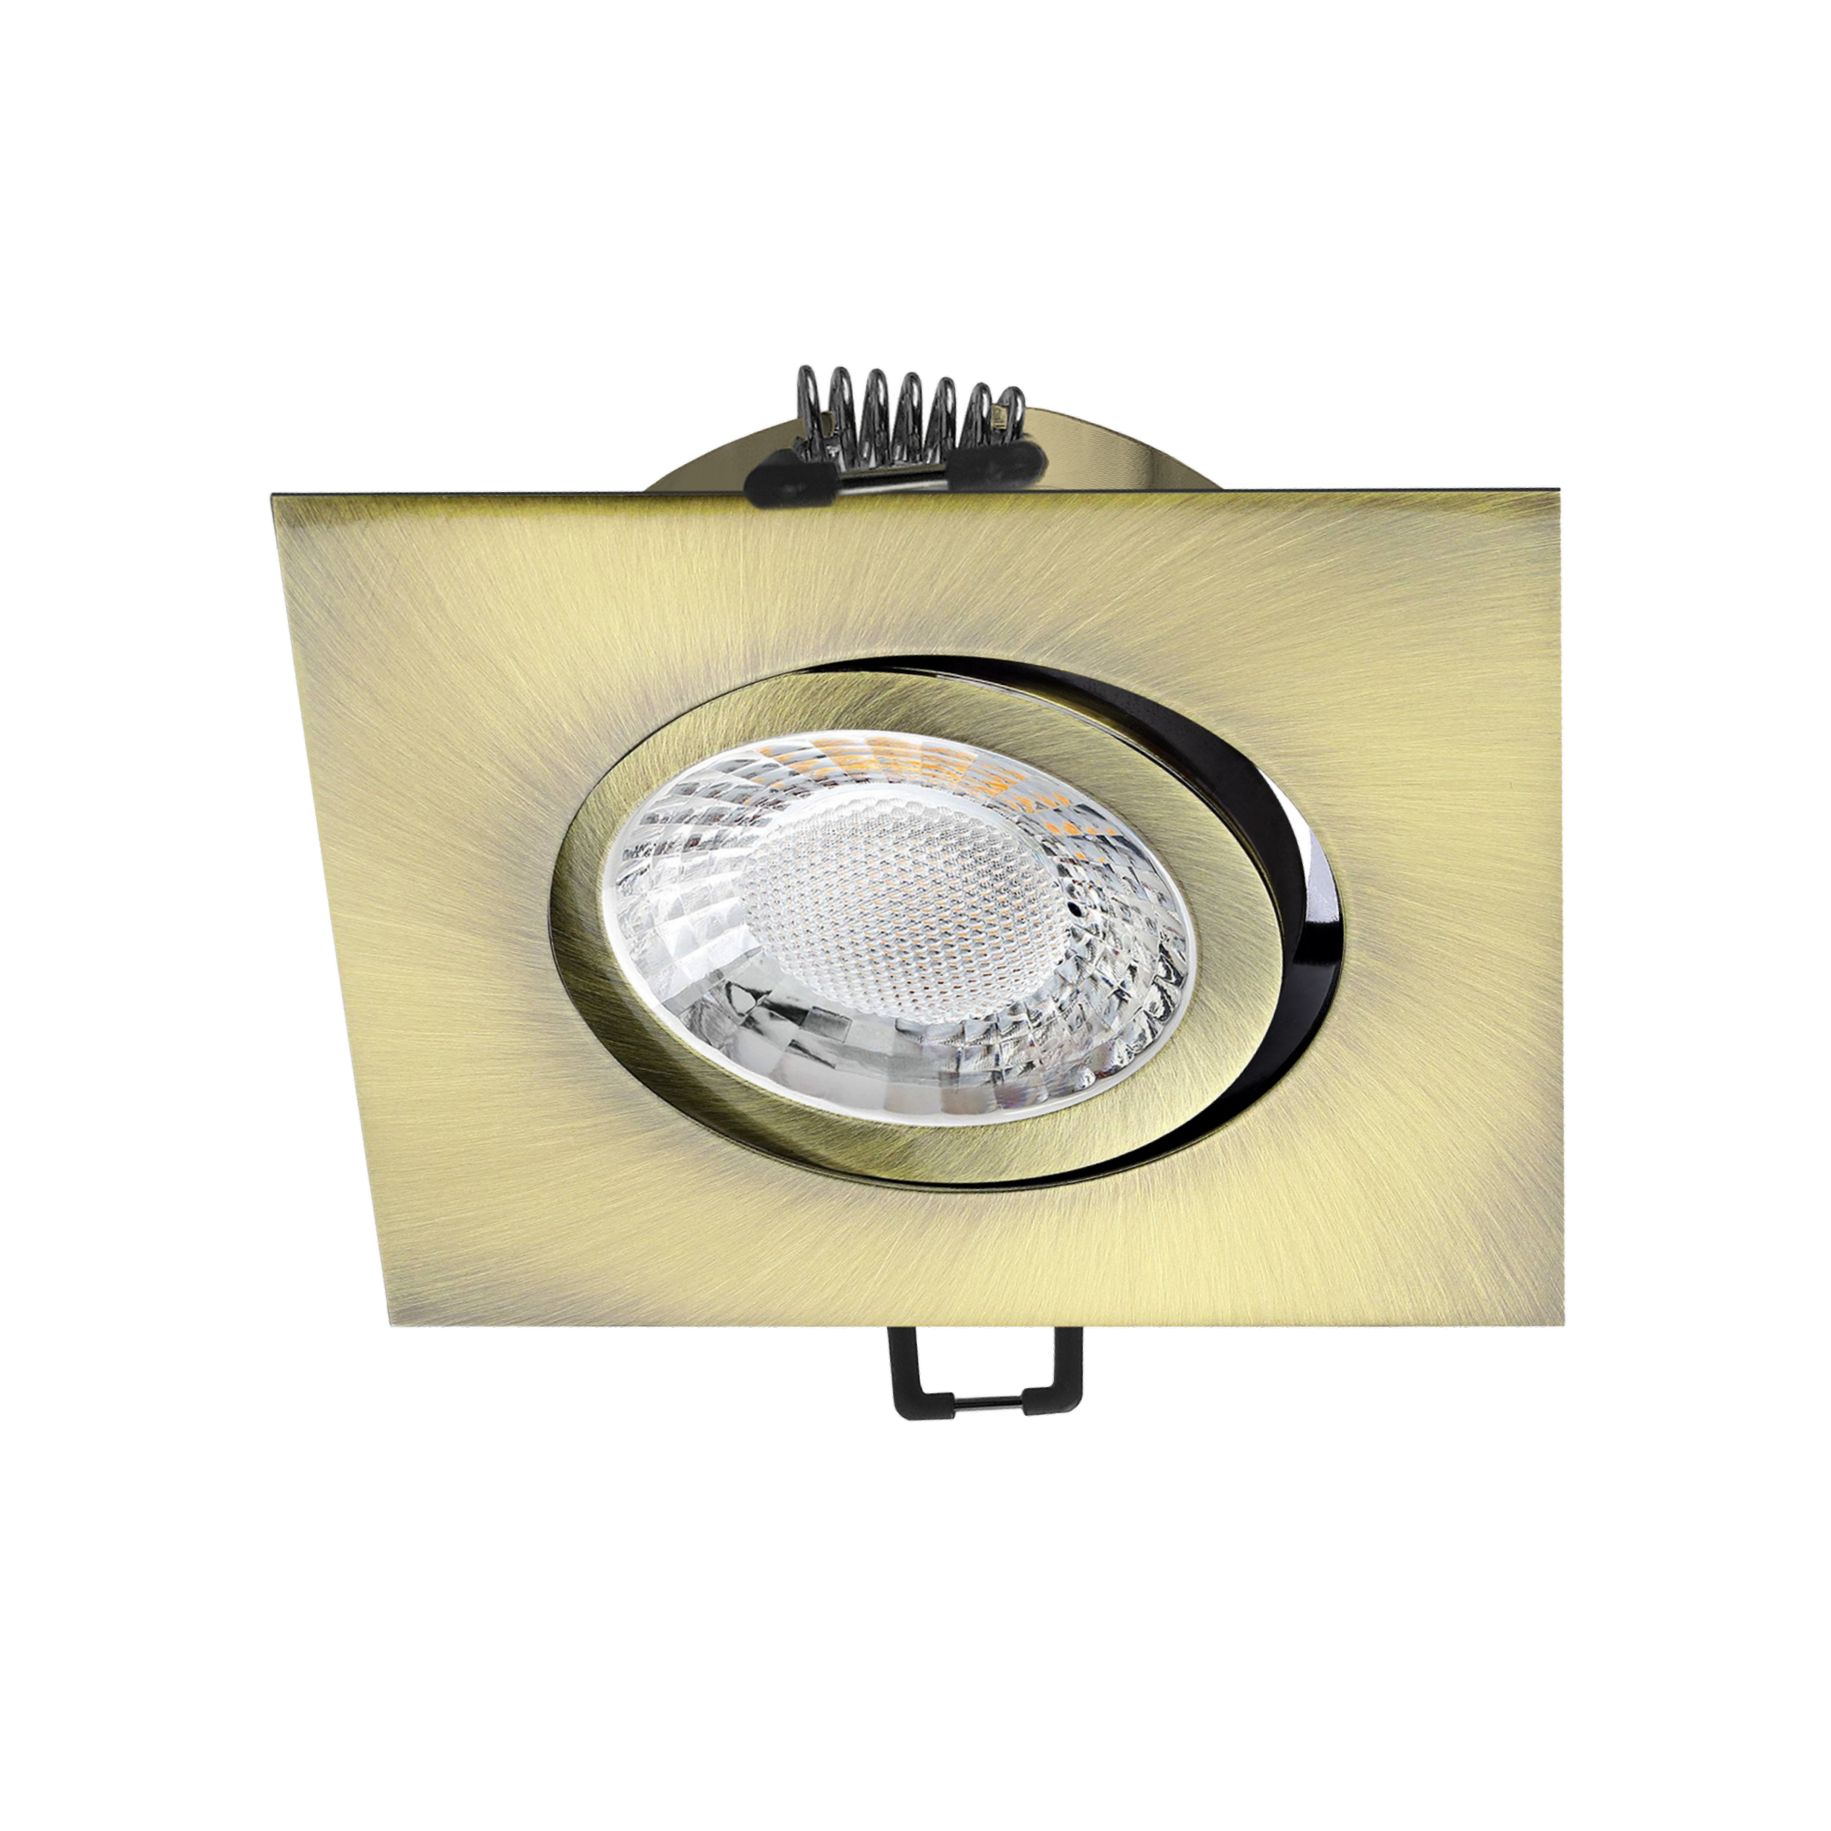 LED Einbaustrahler Altmessing gebürstet | Quadratischer Einbauspot | 30° schwenkbar | Lochmaß Ø 68mm - 80mm | geringe Einbautiefe 25mm | Anschlussfertig 